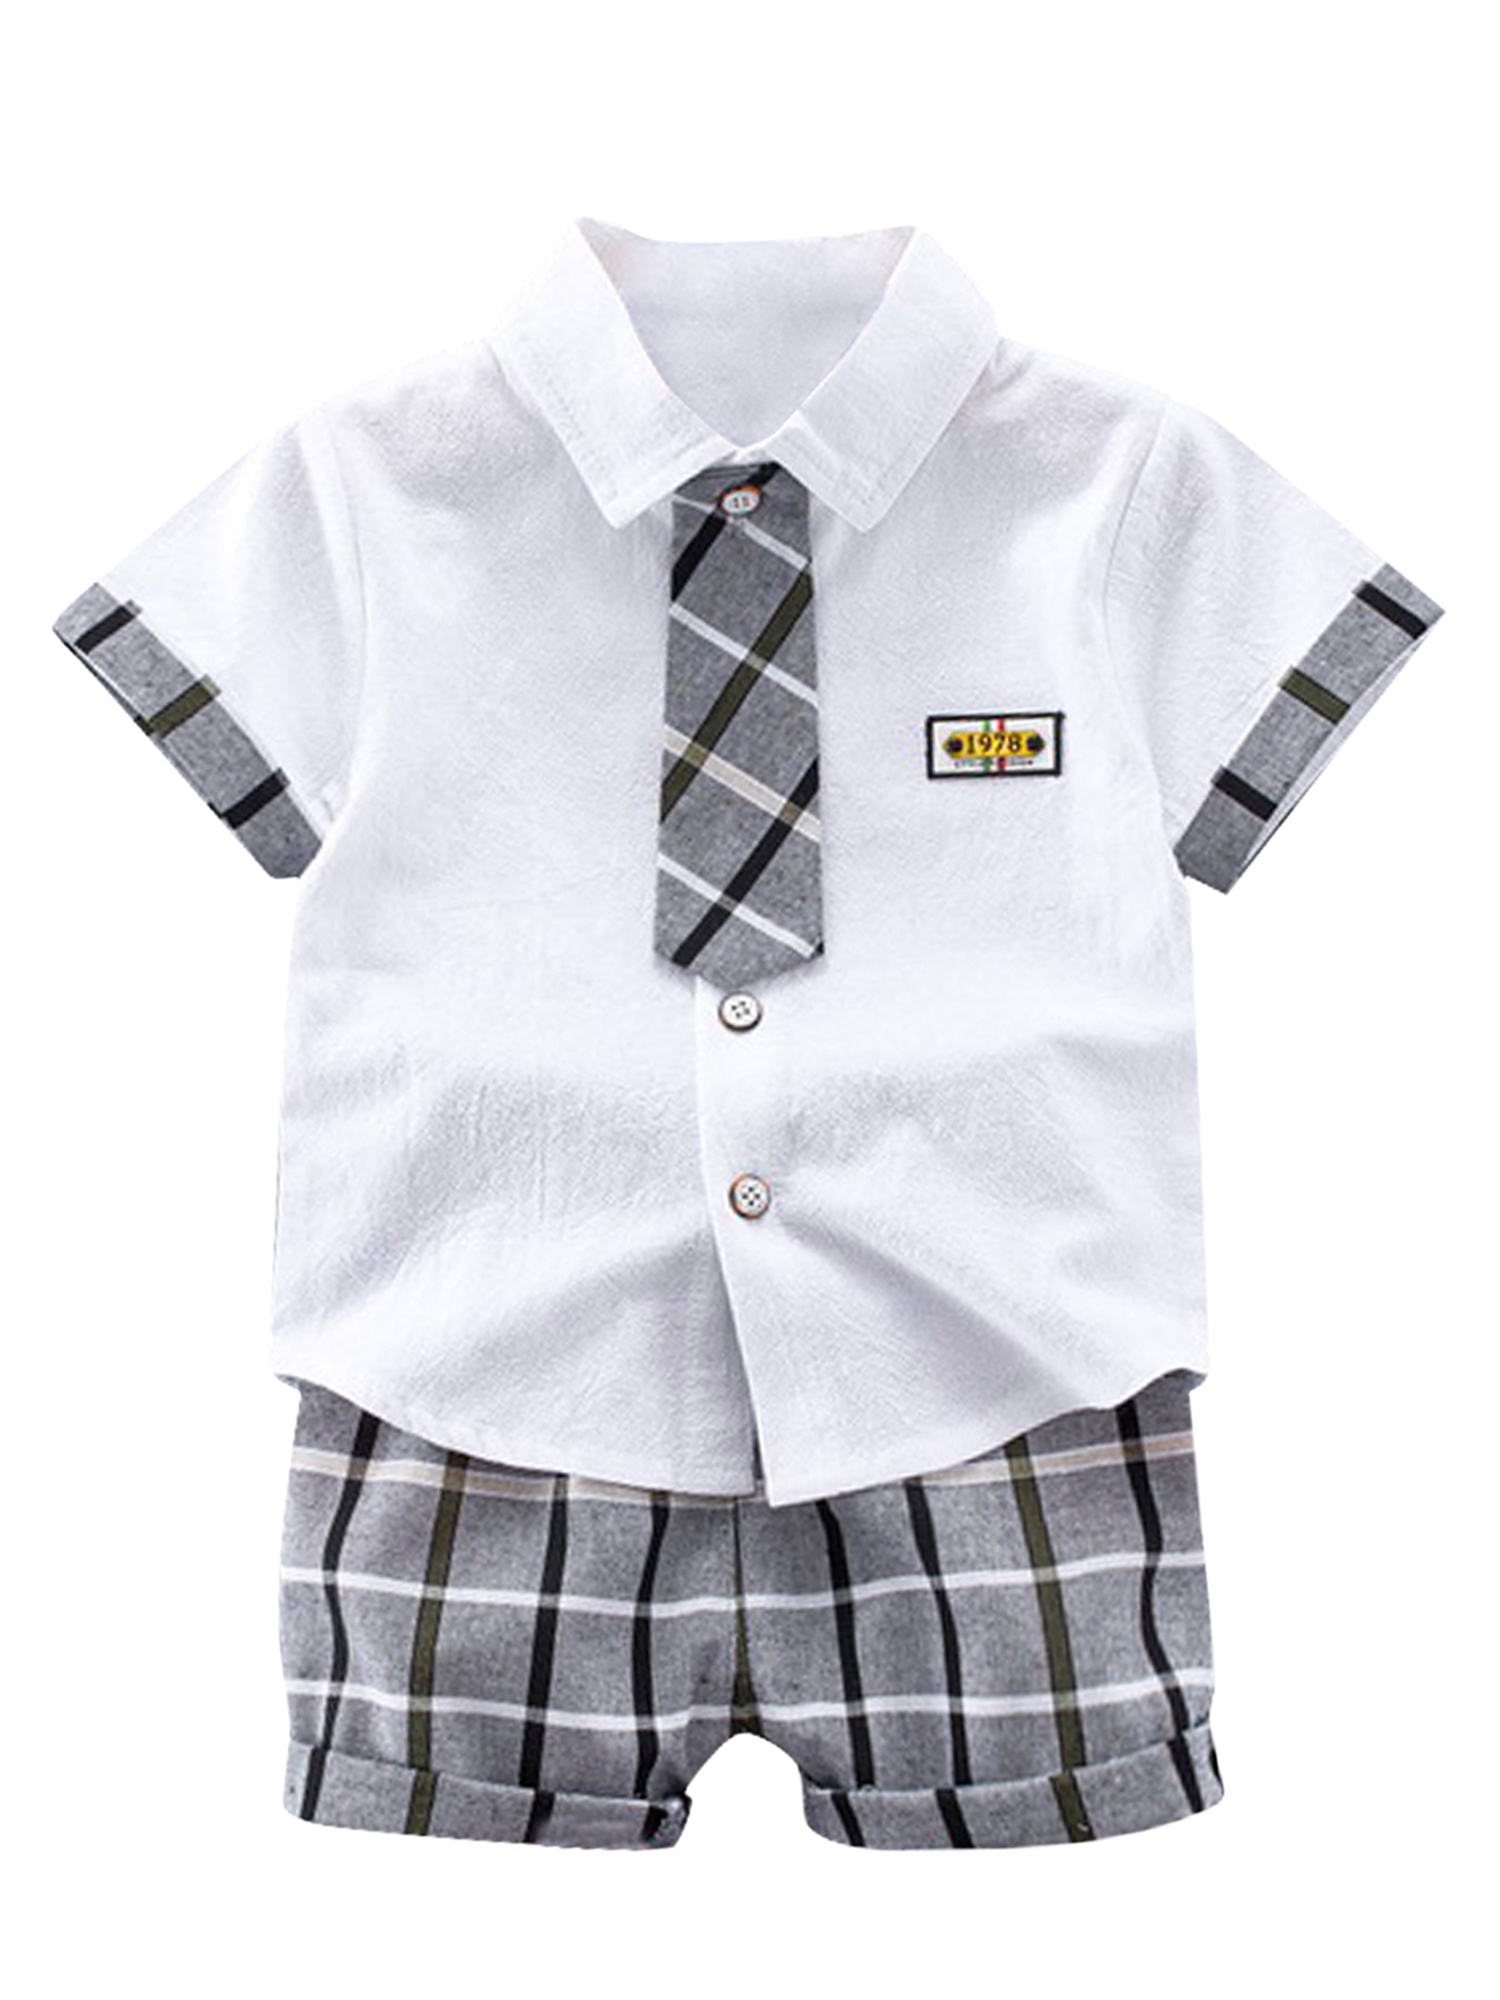 Details about  / 3pcs Baby Kids Boys Dress Suit Coat+Plaids Shirt+Denim Pants Outfits Clothes Set